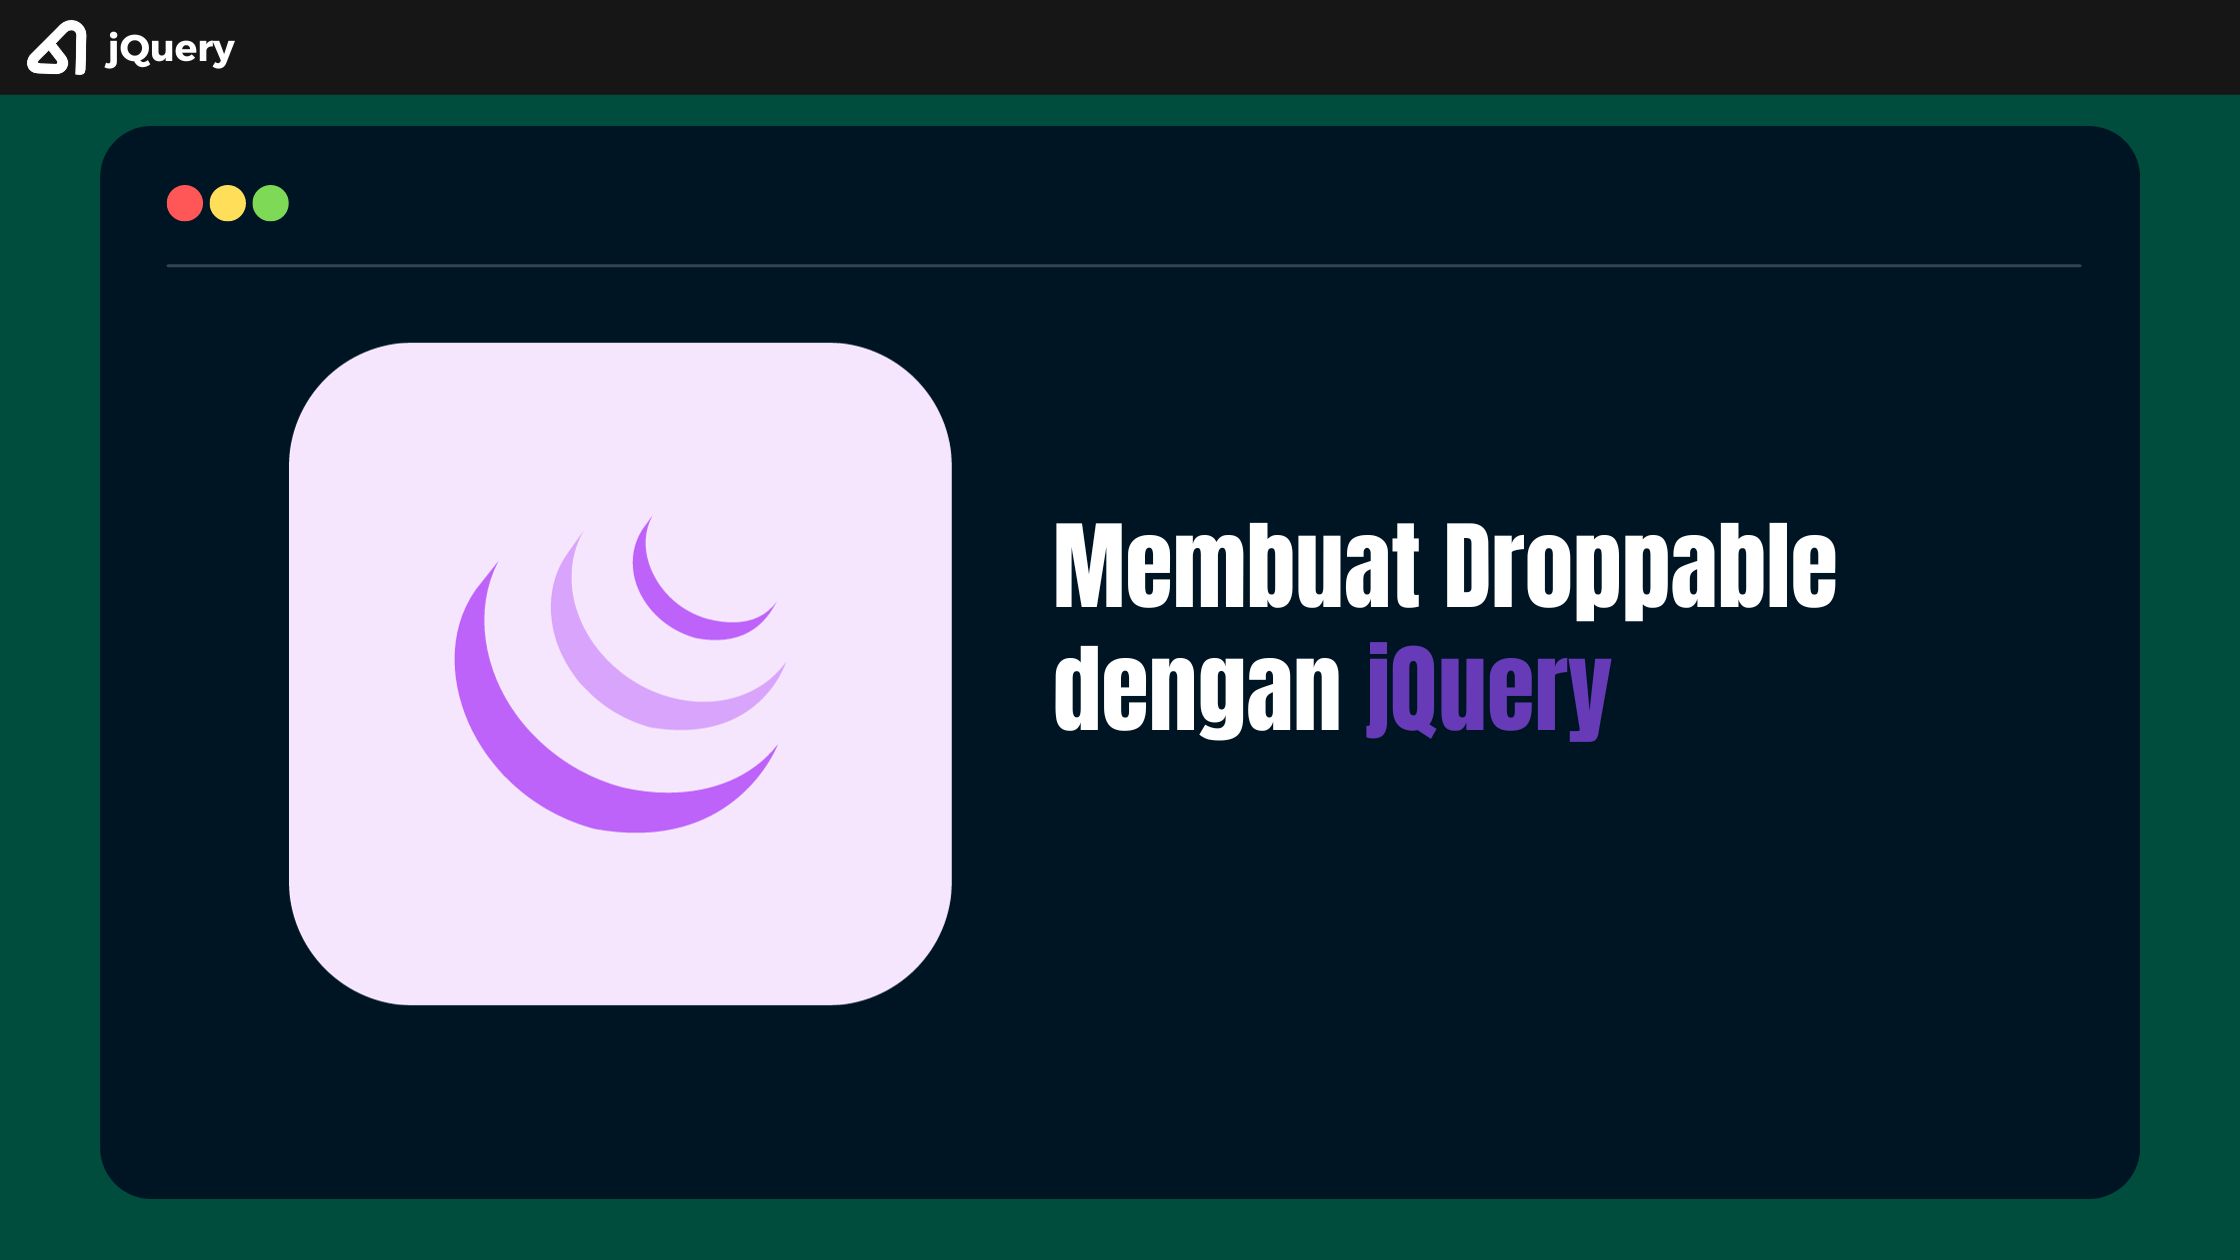 Membuat Droppable dengan jQuery